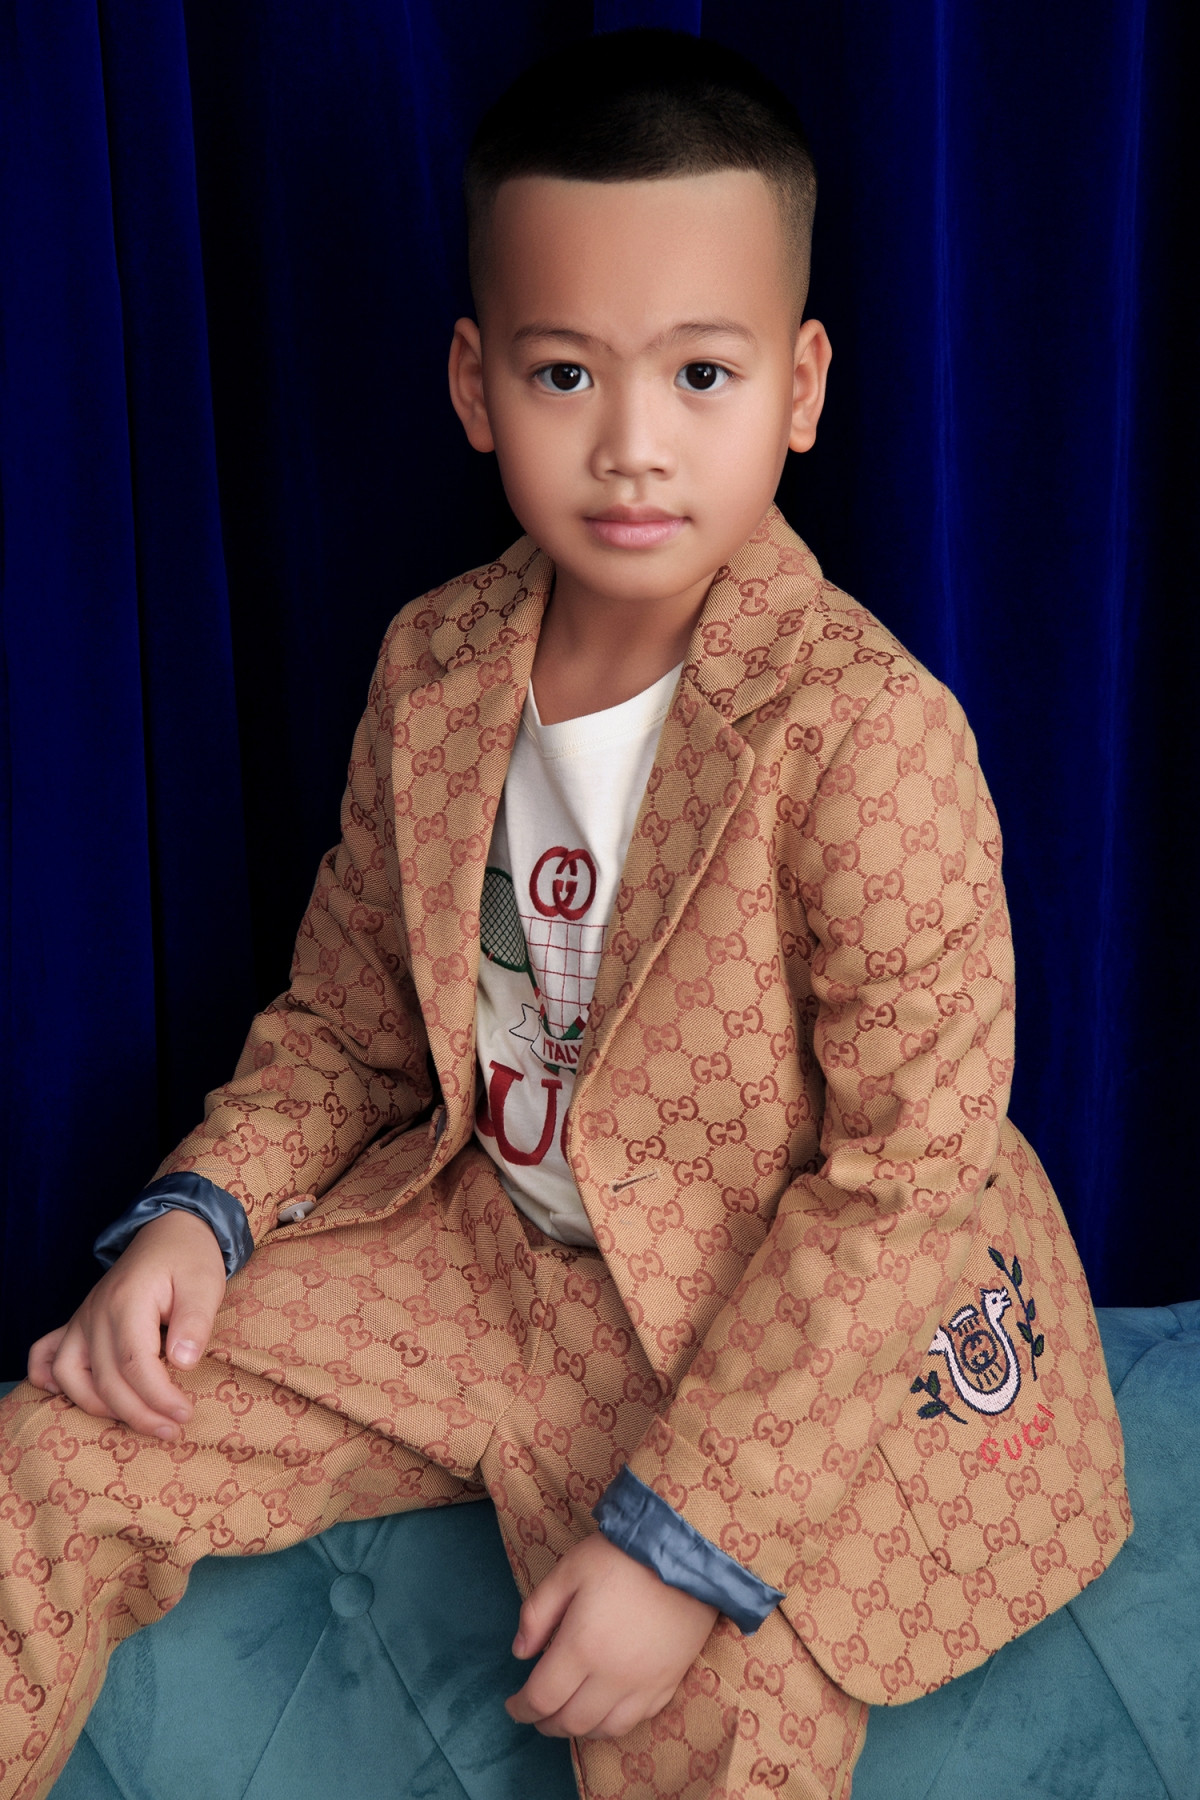 Tít (Đỗ Phạm Gia An) diện vest màu nâu nhạt phối cùng áo thun với hoạ tiết đặc trưng của thương hiệu Gucci. NTK tiết lộ con trai có thiên hướng trở thành người làm việc văn phòng, kinh doanh. 